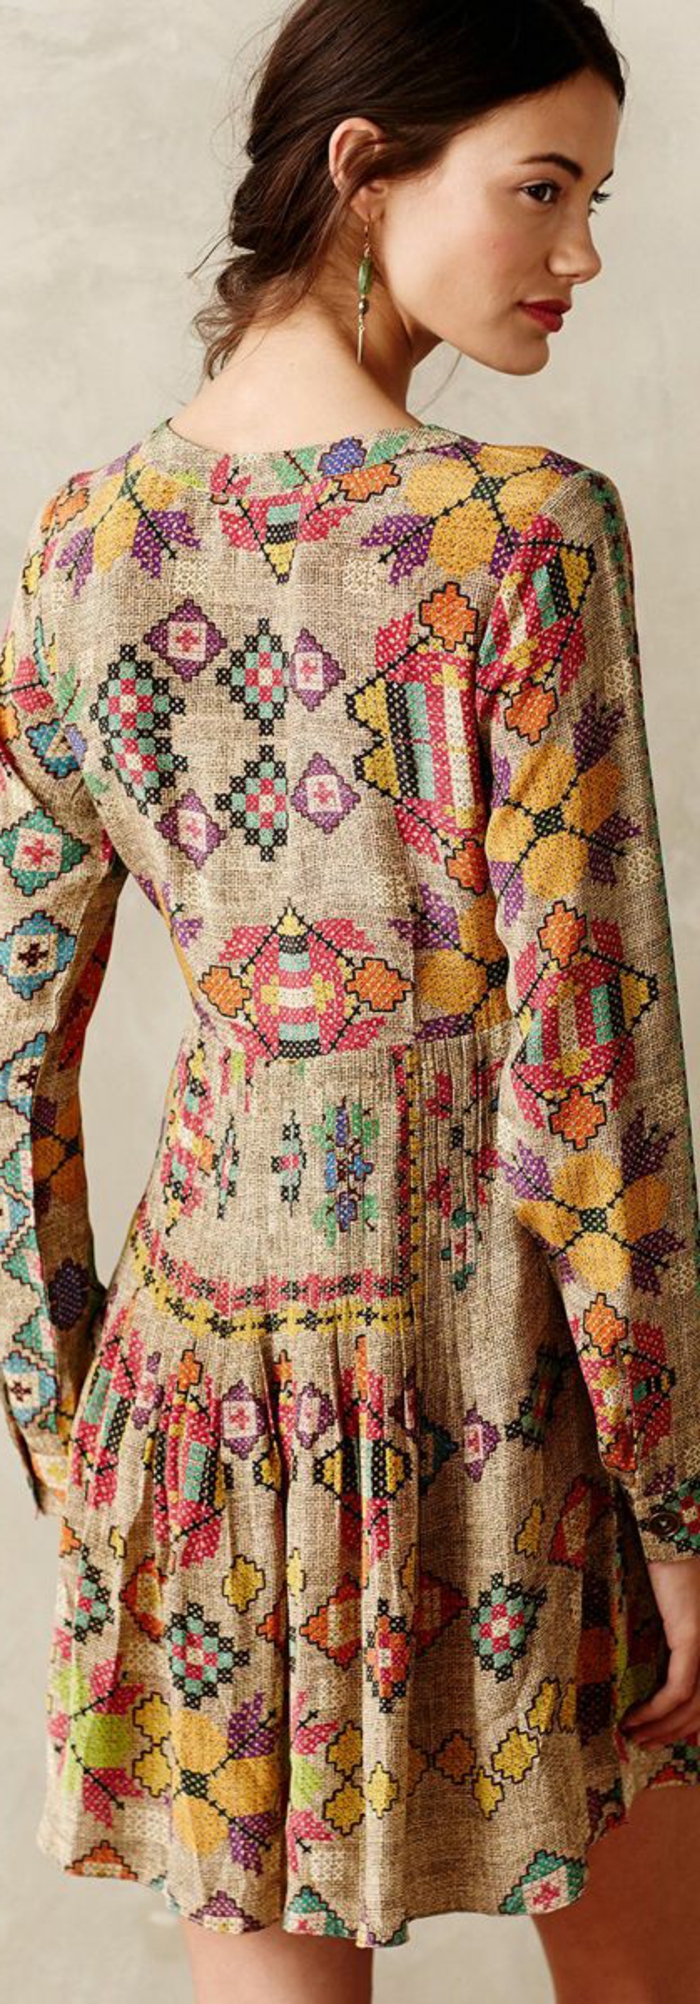 robe imprimée ethnique, robe style ethnique, matière naturelle, imprimés patterns géométriques